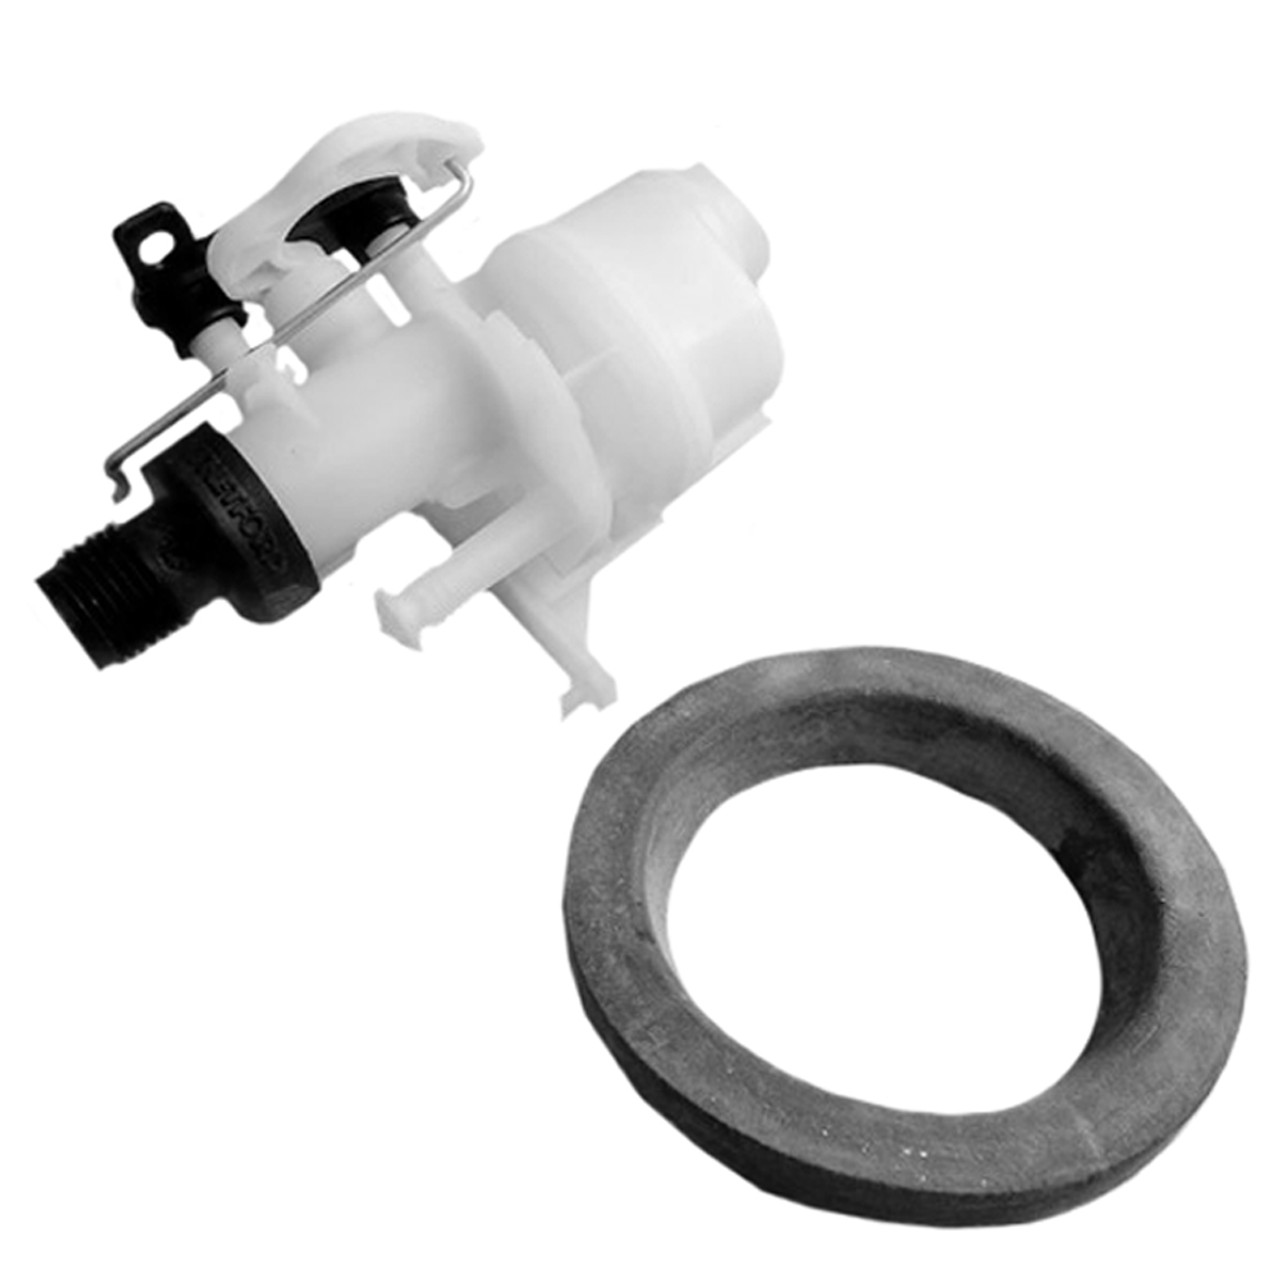 Thetford RV Toilet valve seal replacement